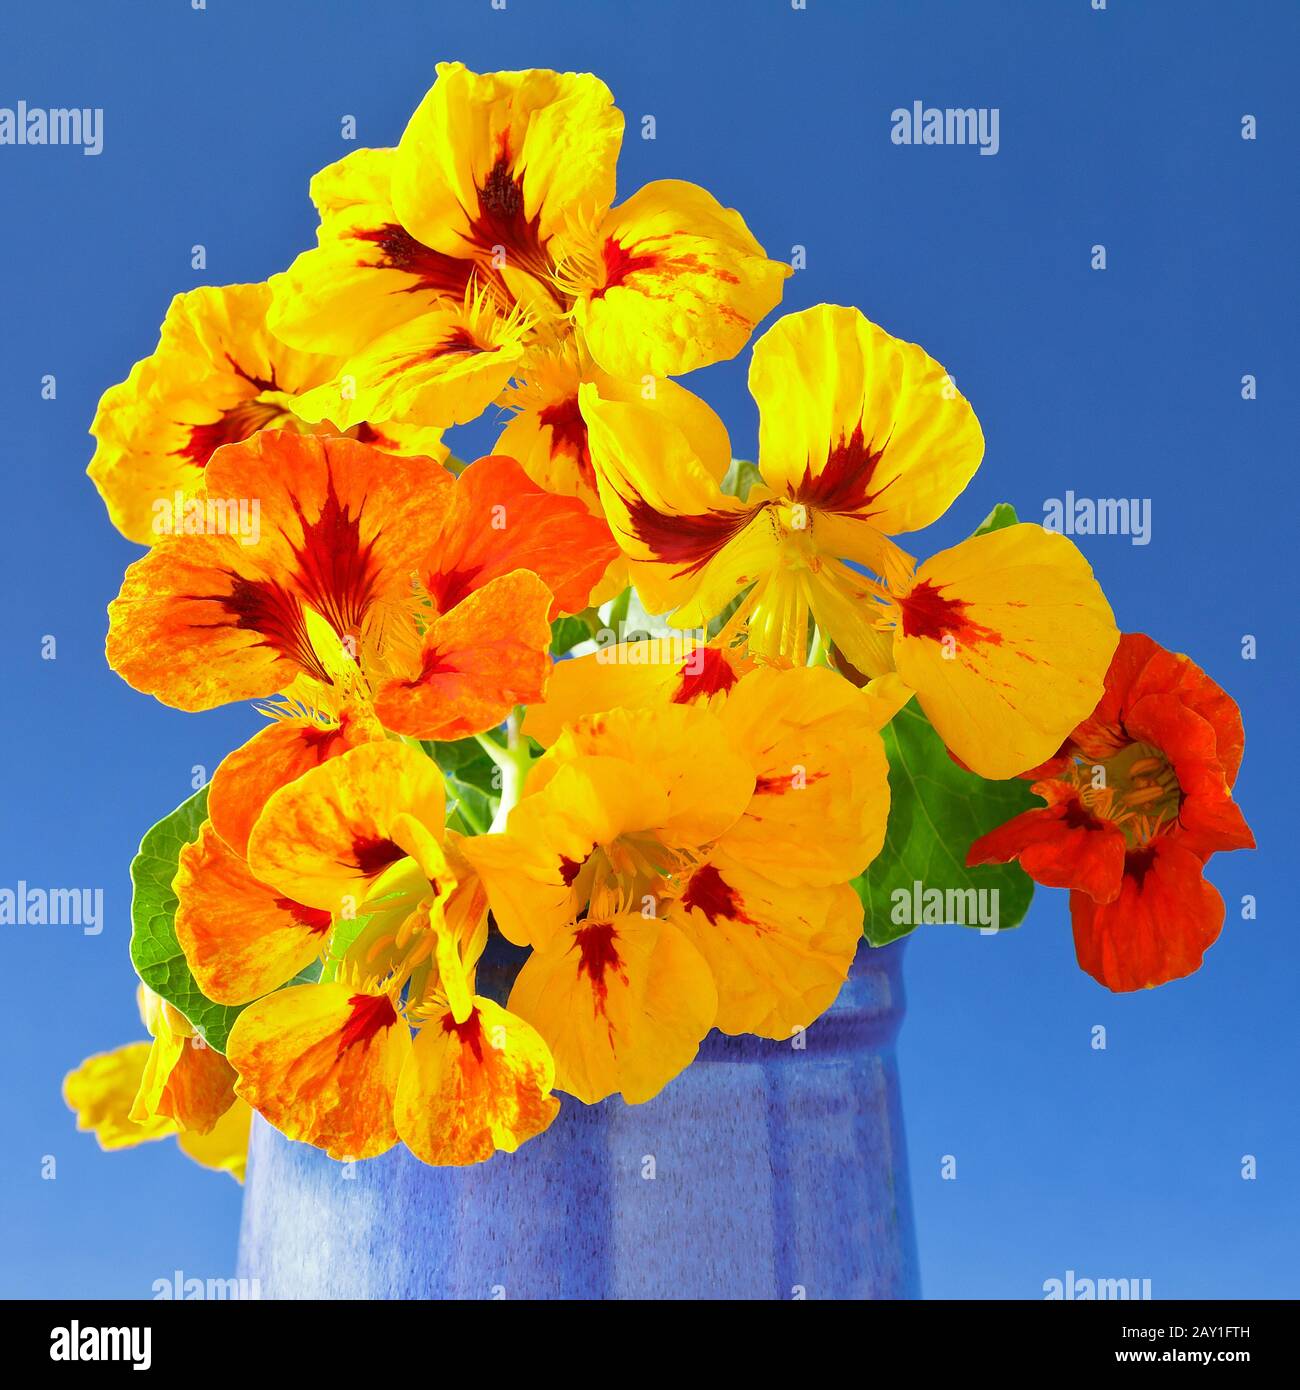 Fiori di nasturzio giallo, arancio e rosso in un vaso su sfondo blu vivo, formato quadrato. Foto Stock